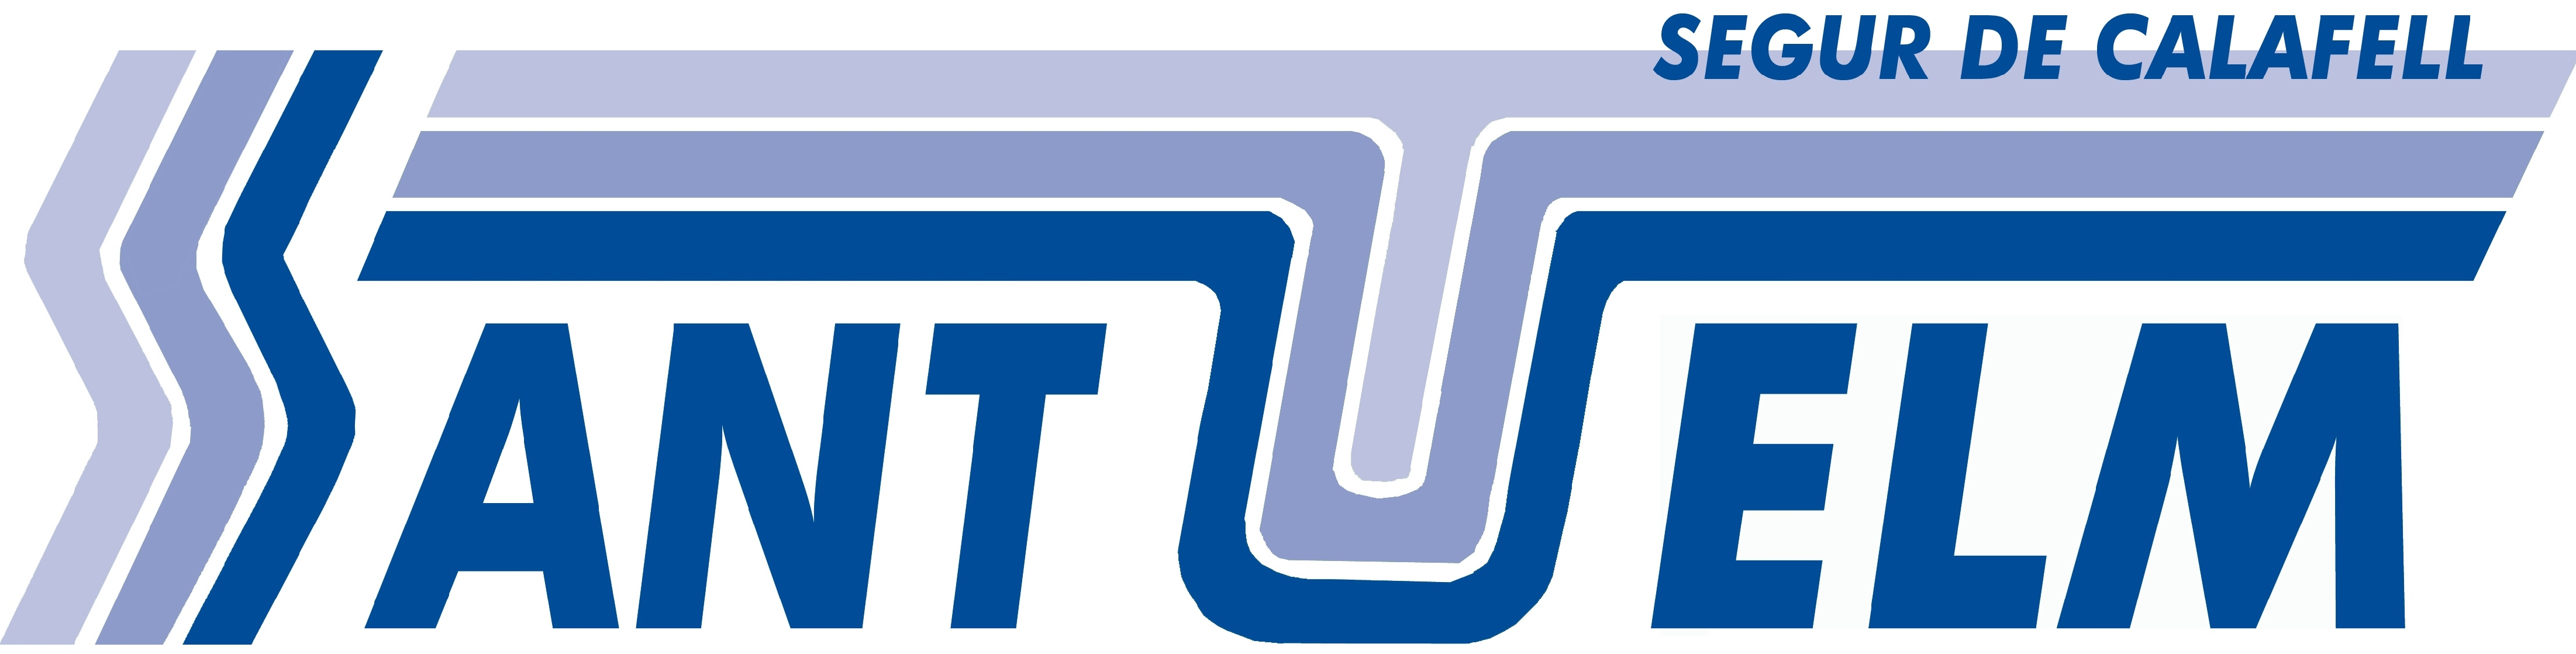 Logo Finques Sant Telm 